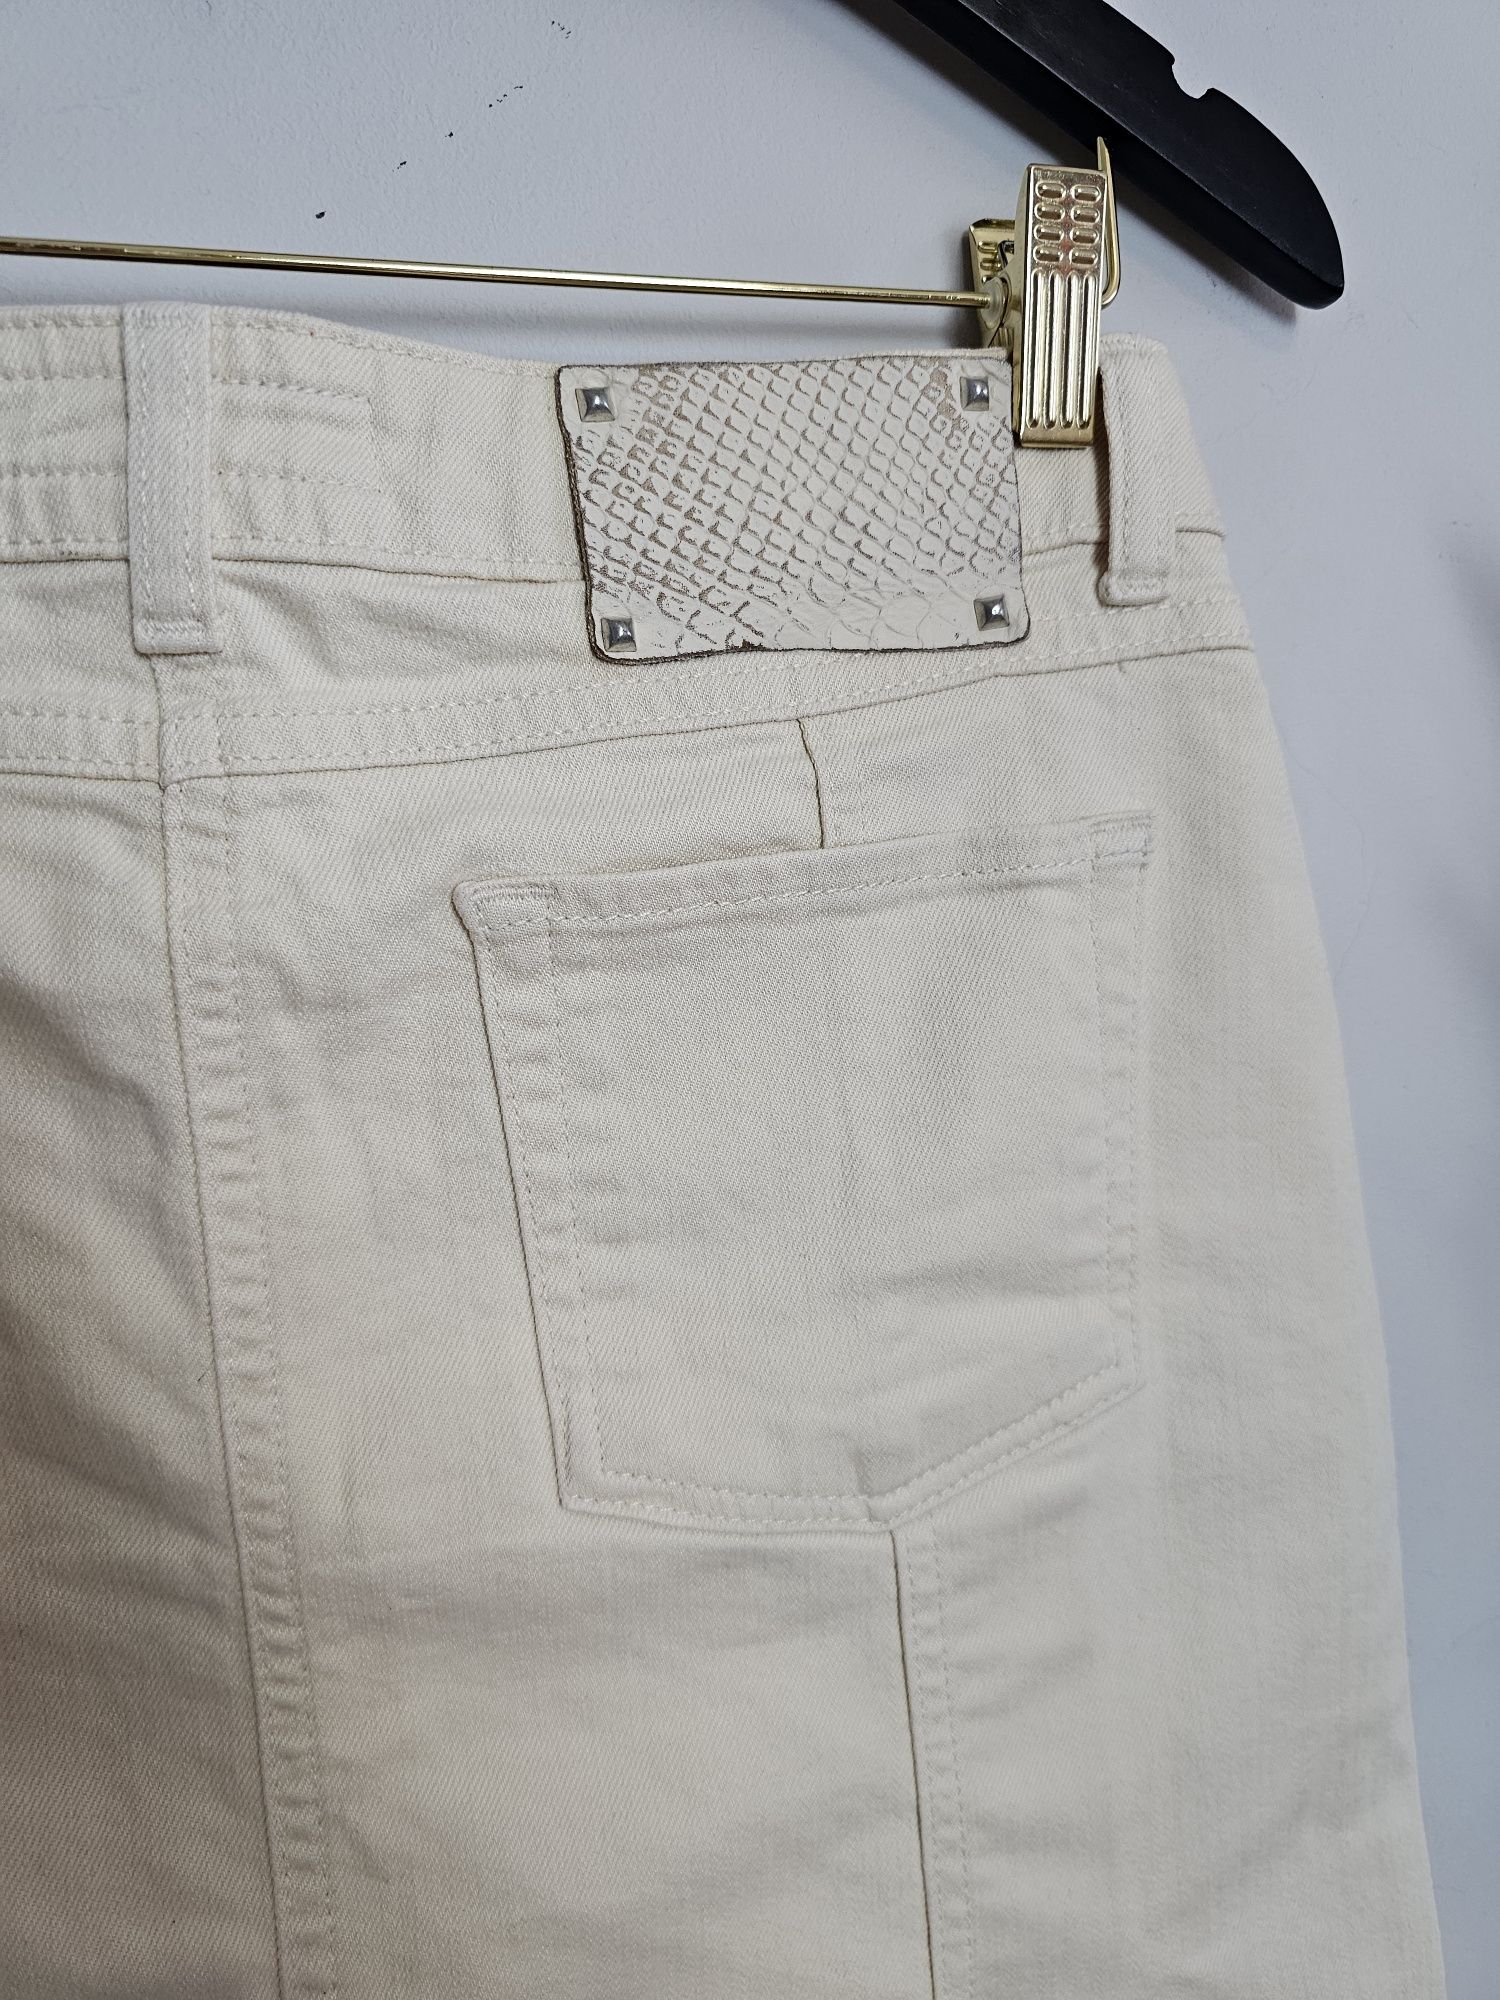 Spódnica jeansowa kremowa z zakładkami bawełna przed kolano